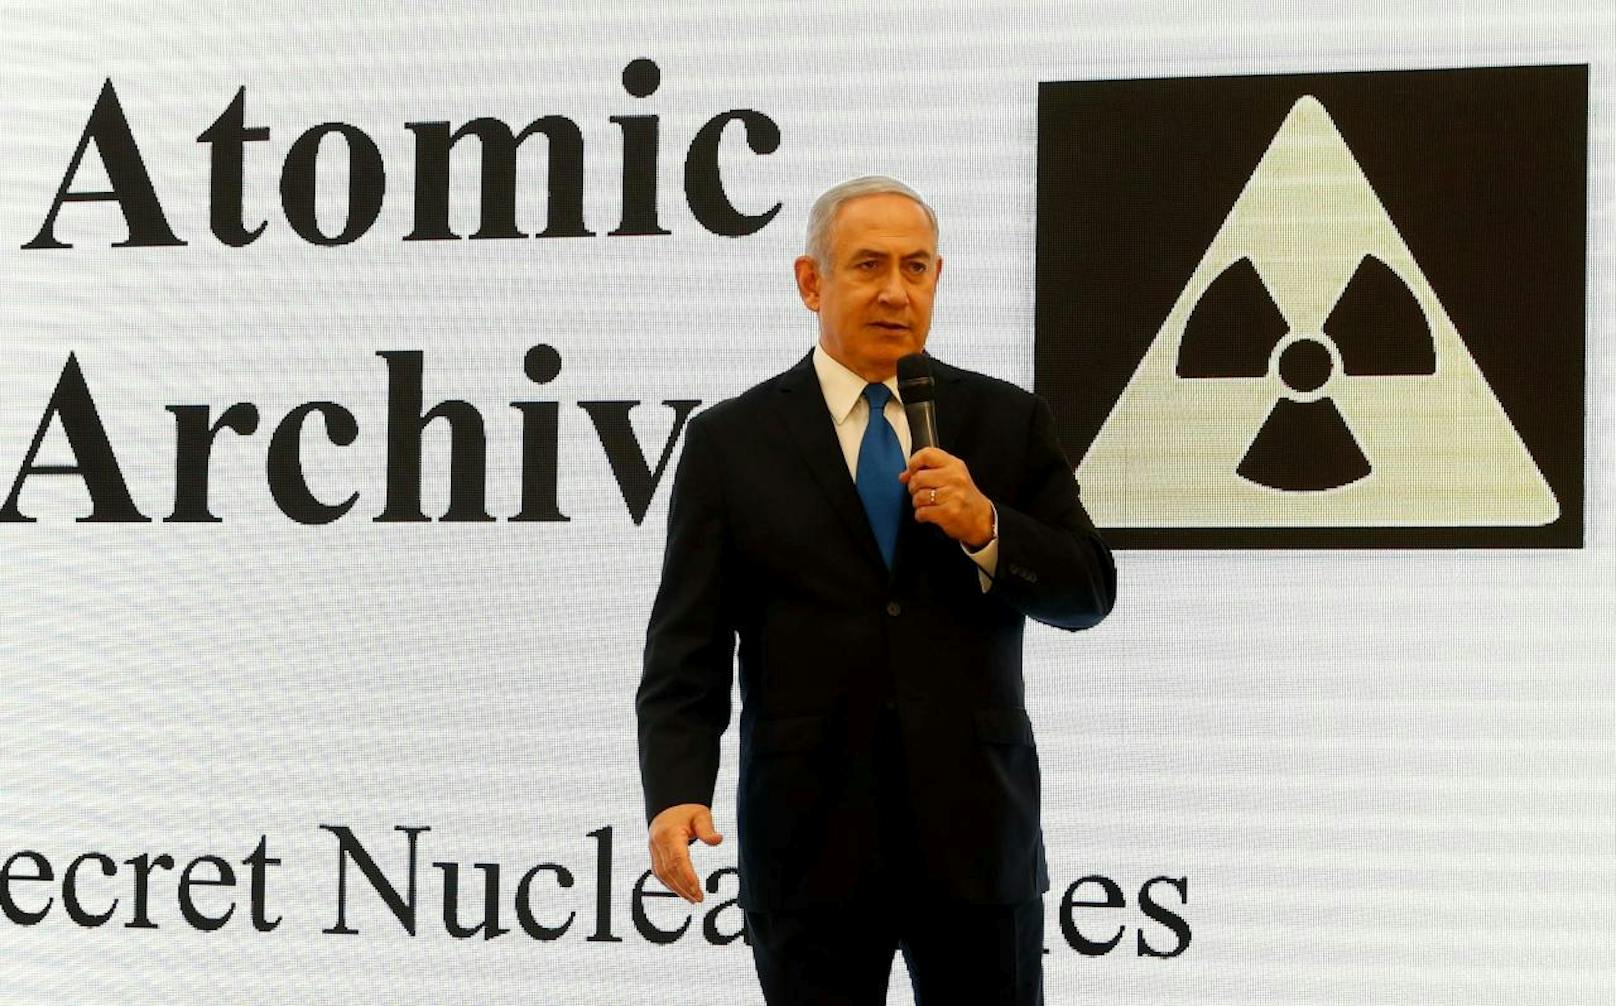 Die Informationen bezieht Israel aus einem "geheimen Atomarchiv" des Iran, welches israelischen Geheimdiensten vor wenigen Wochen zugespielt worden sein soll.